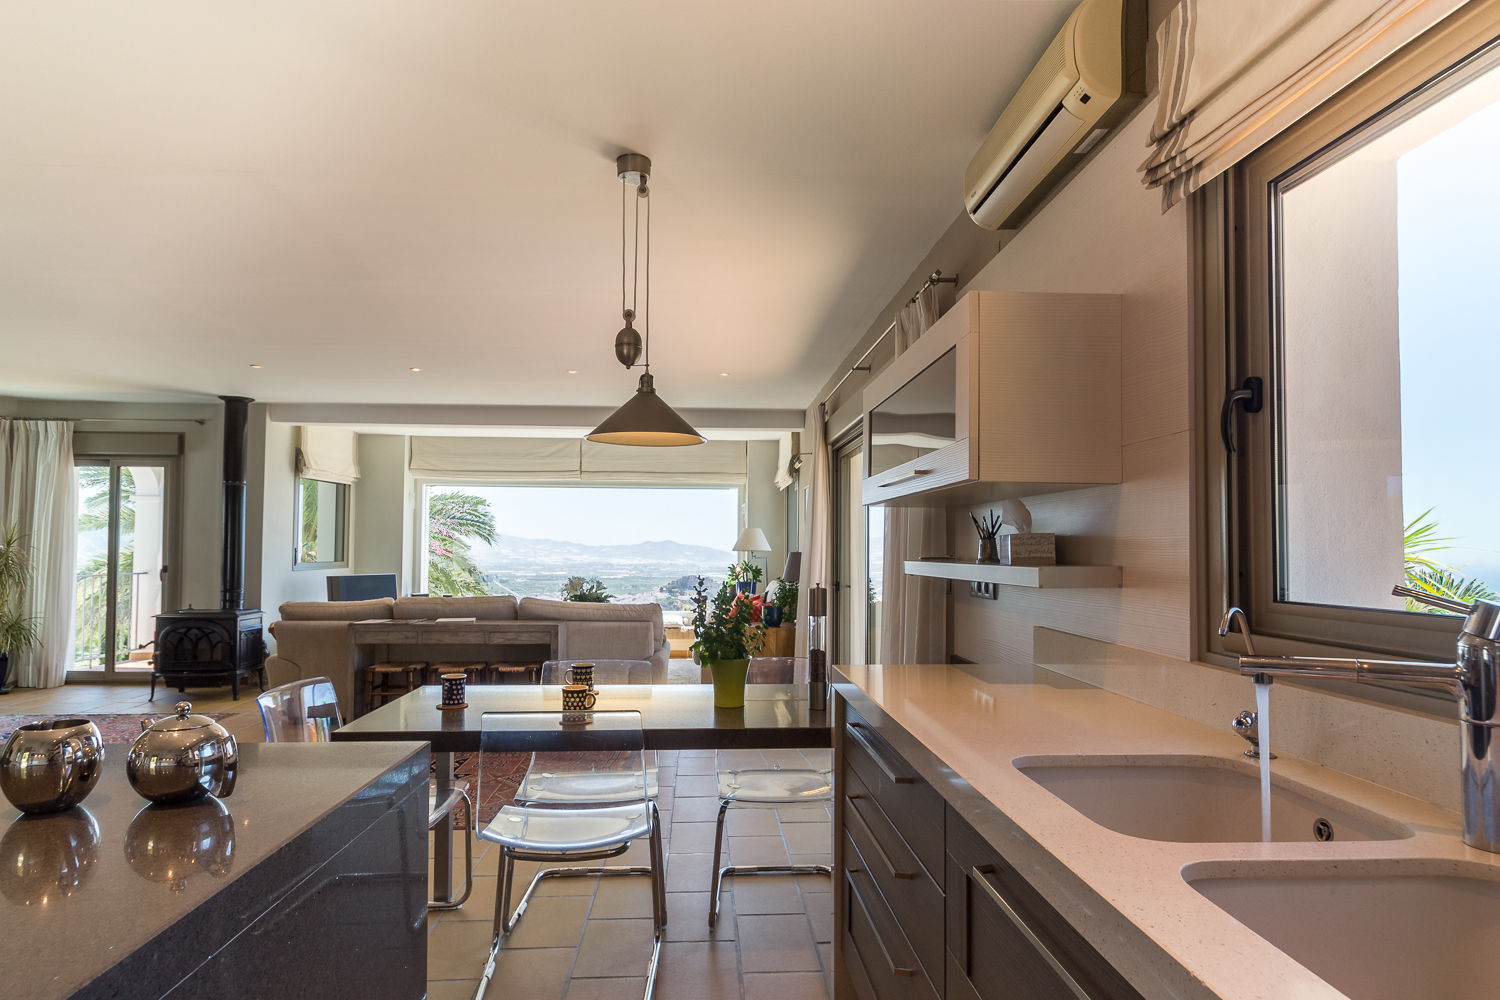 Cocina Home & Haus | Home Staging & Fotografía Cocinas de estilo mediterráneo homestaging,fotografía,islas de cocina,espacios abiertos,barra,vistas,azul